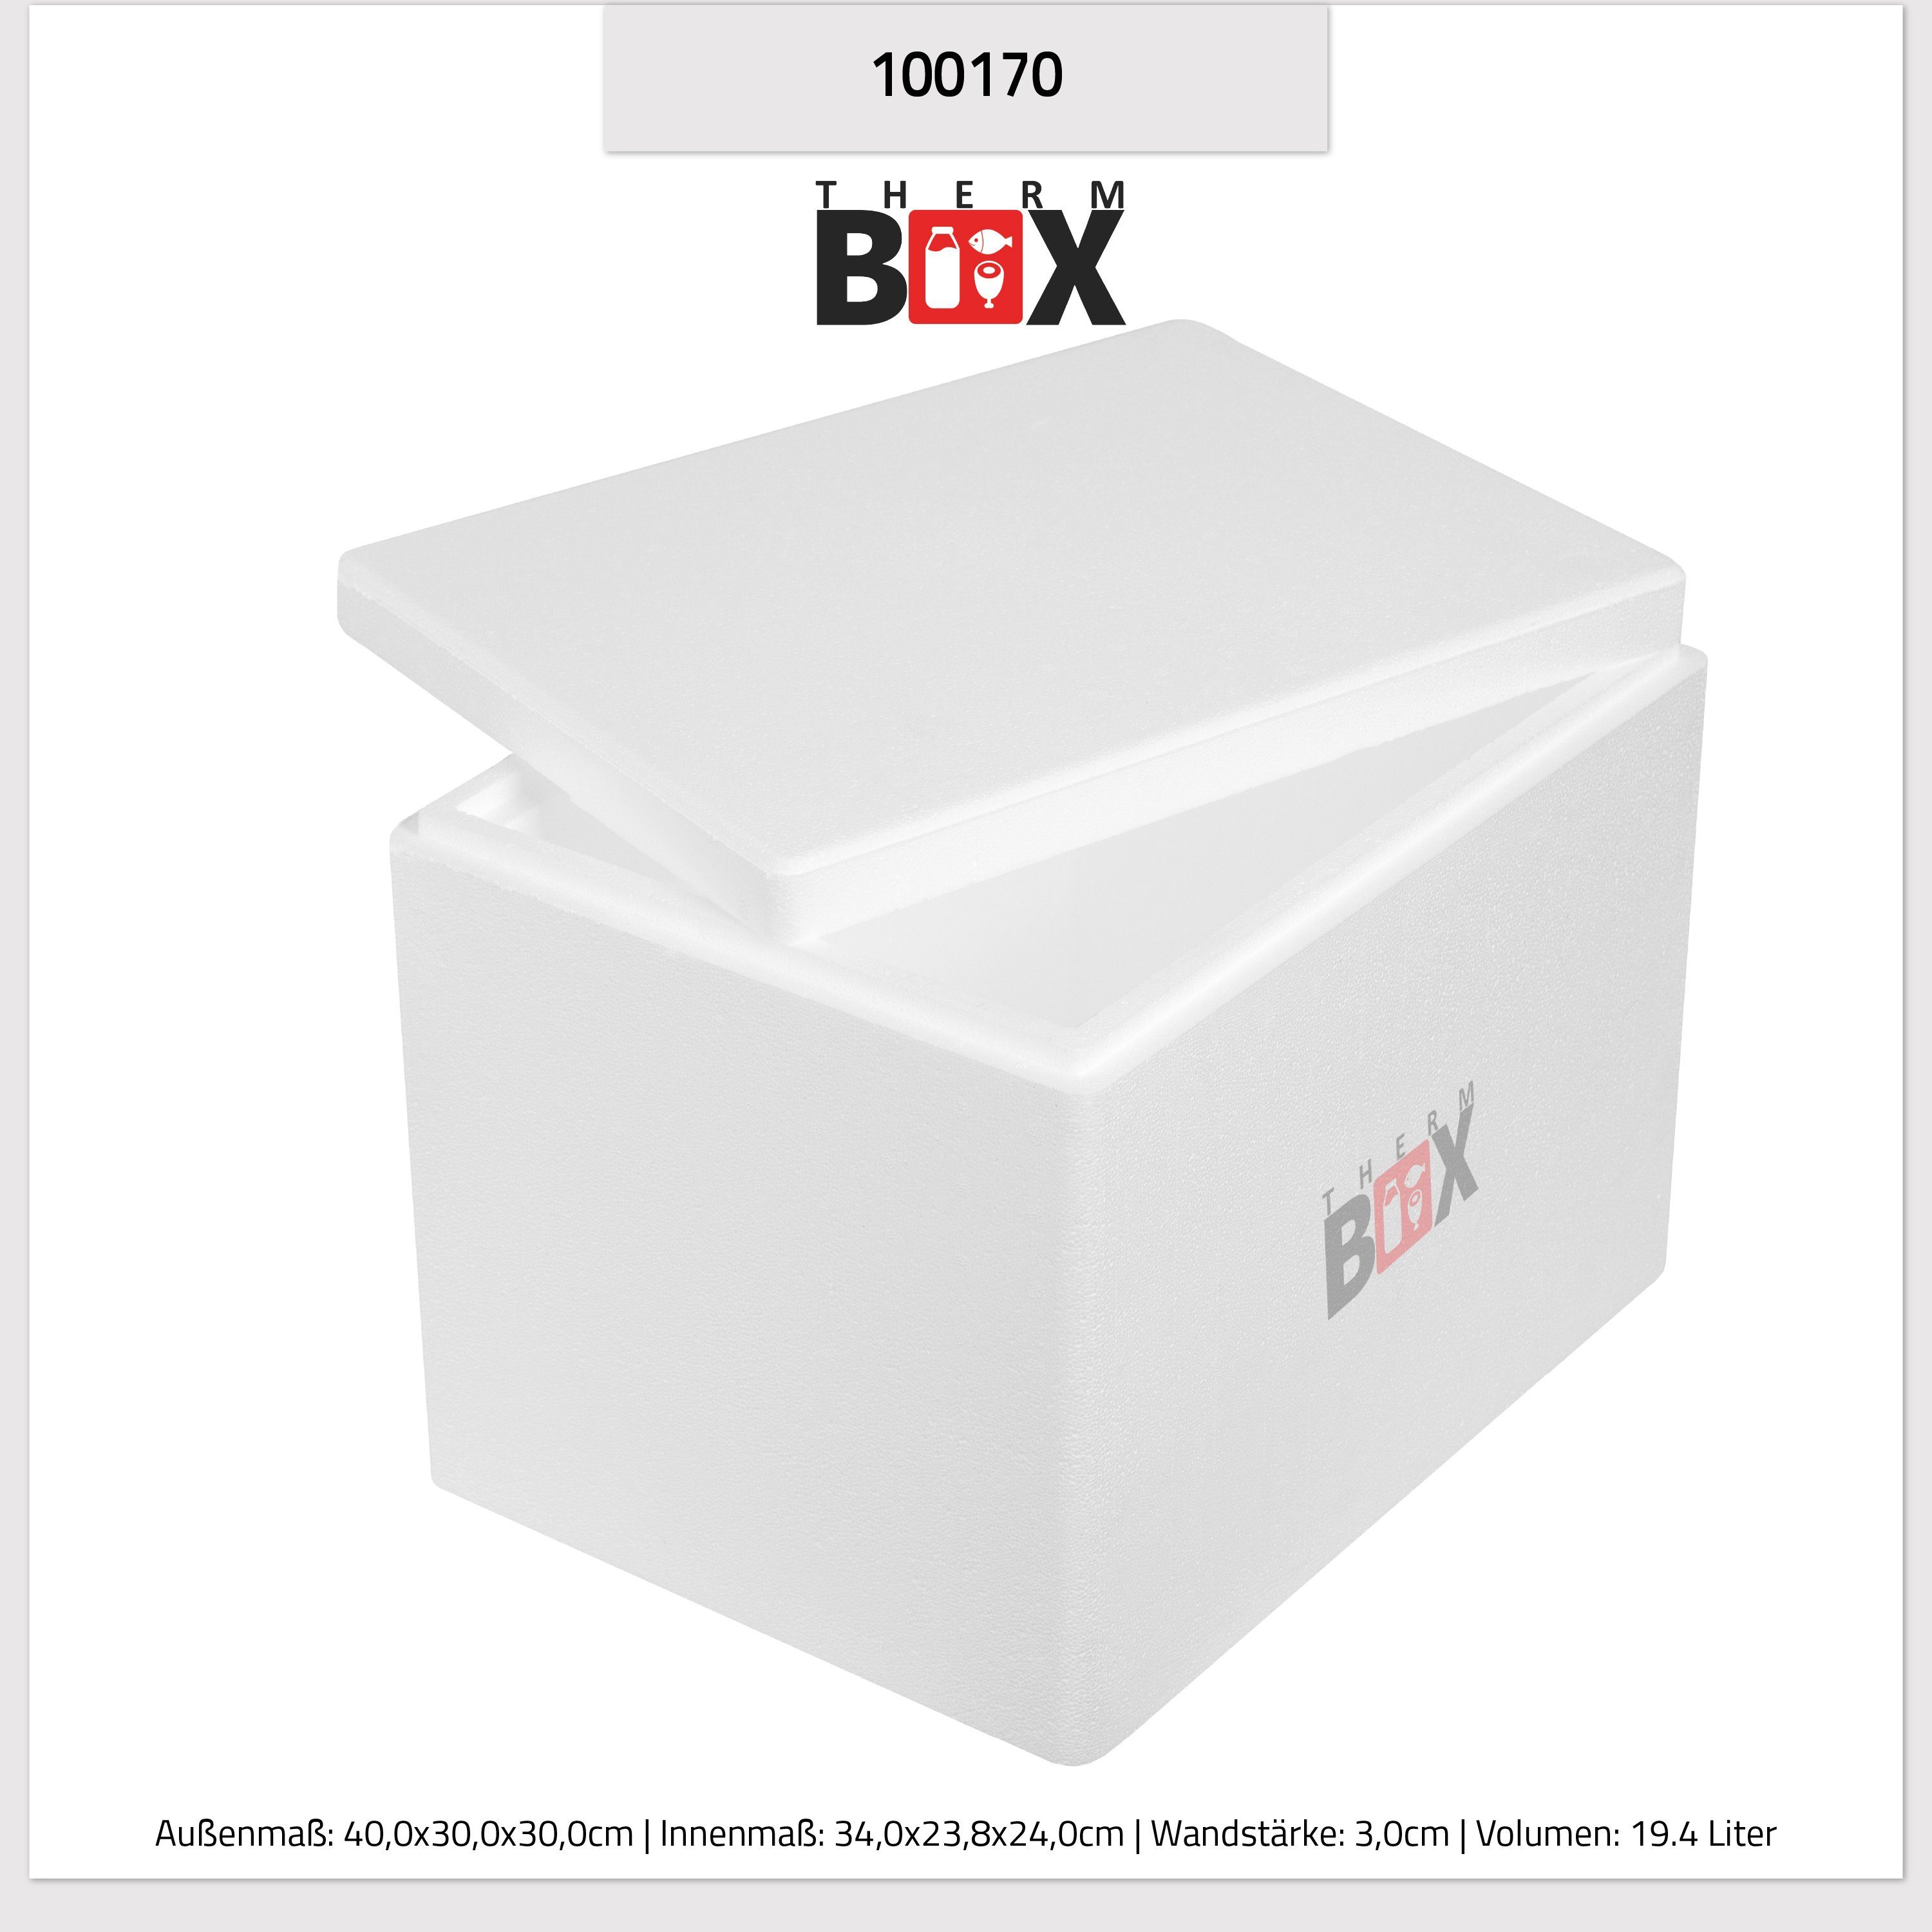 Styroporbox THERM-BOX Warmhaltebox 34x23x24cm Thermobehälter Styropor-Verdichtet, Innen: 19W Wiederverwendbar (1, mit Deckel im 0-tlg., Thermobox 3cm Kühlbox Box Karton), 19,4L, Wand: Isolierbox